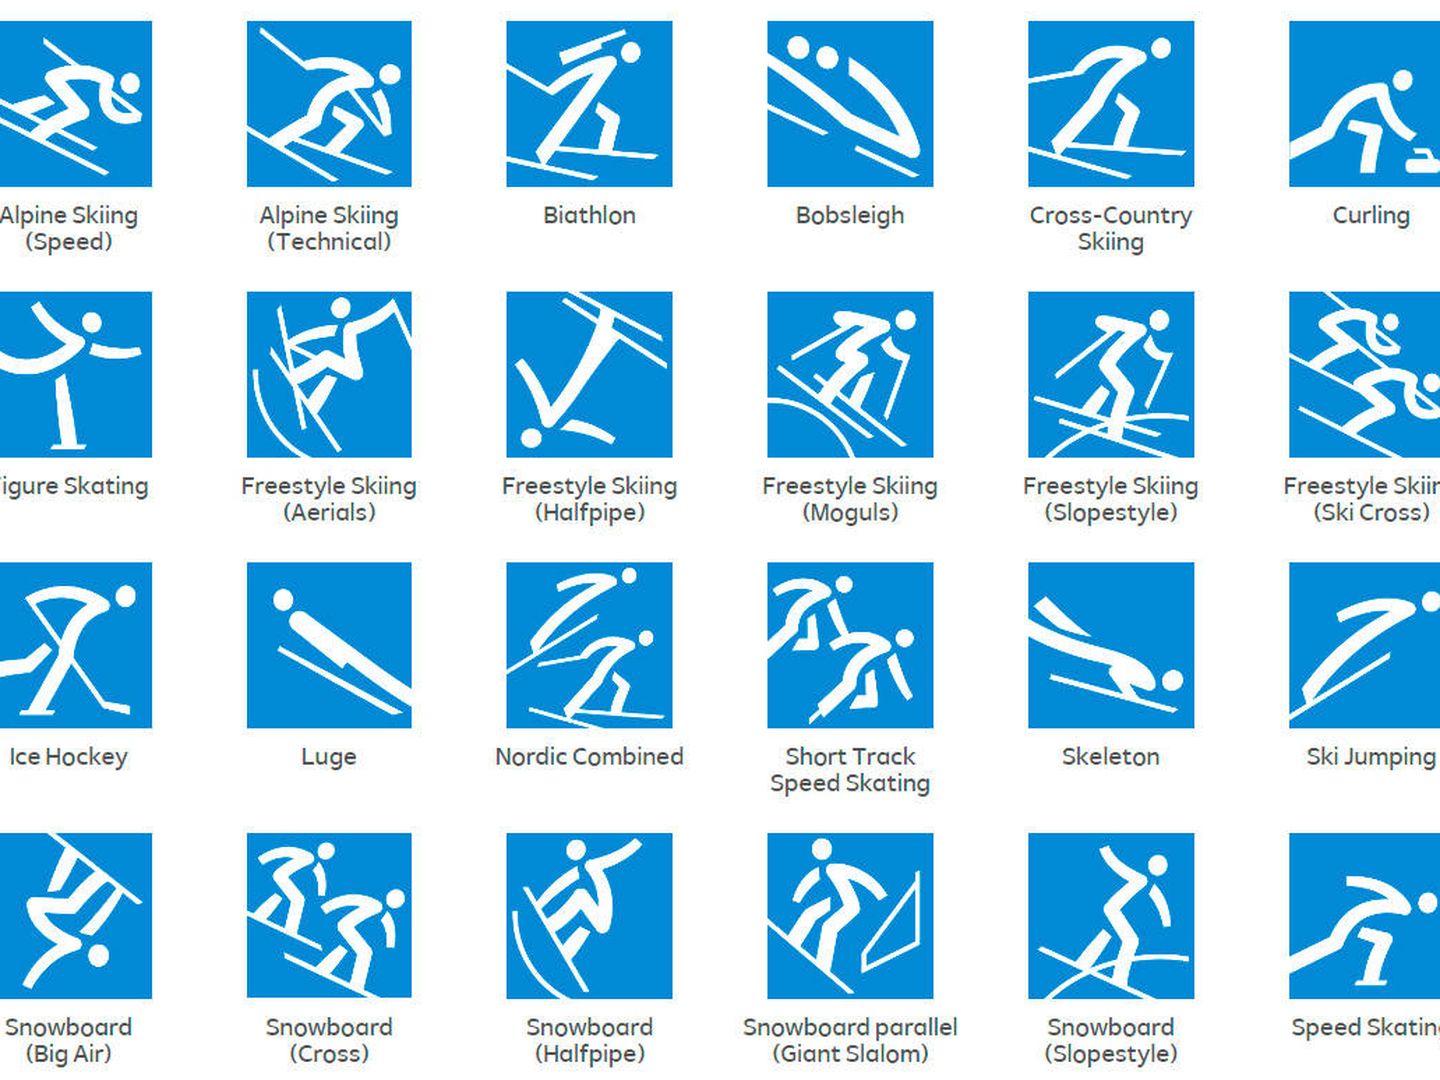 Los pictogramas de PyeongChang 2018, preparados